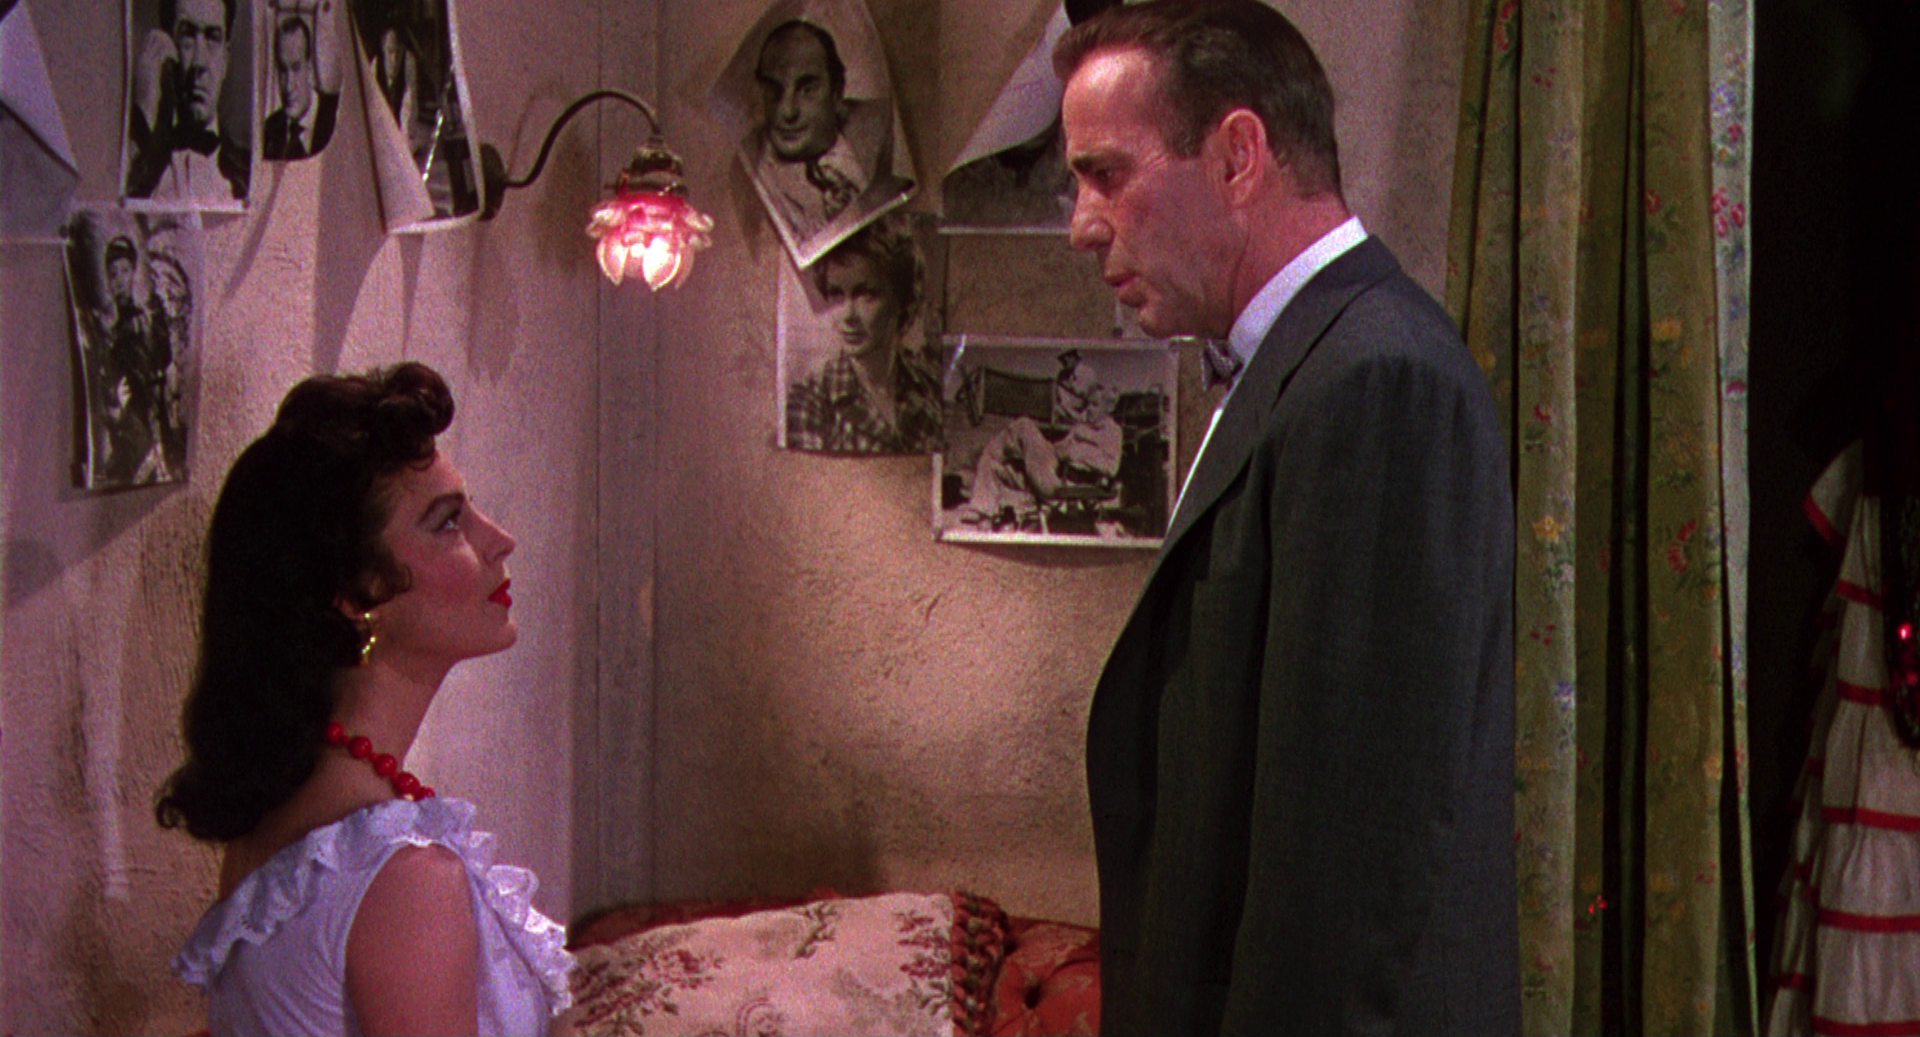 Links im Bild Ava Gardner als Tänzerin in ihrer Garderobe; sie blickt von unten herab zu dem vor ihr stehenden Humphrey Bogart, der einen Hollywoodregisseur im Anzug mit Fliege spielt; an der Zimmerwand hängen mehrere Fotografien von Berühmtheiten.